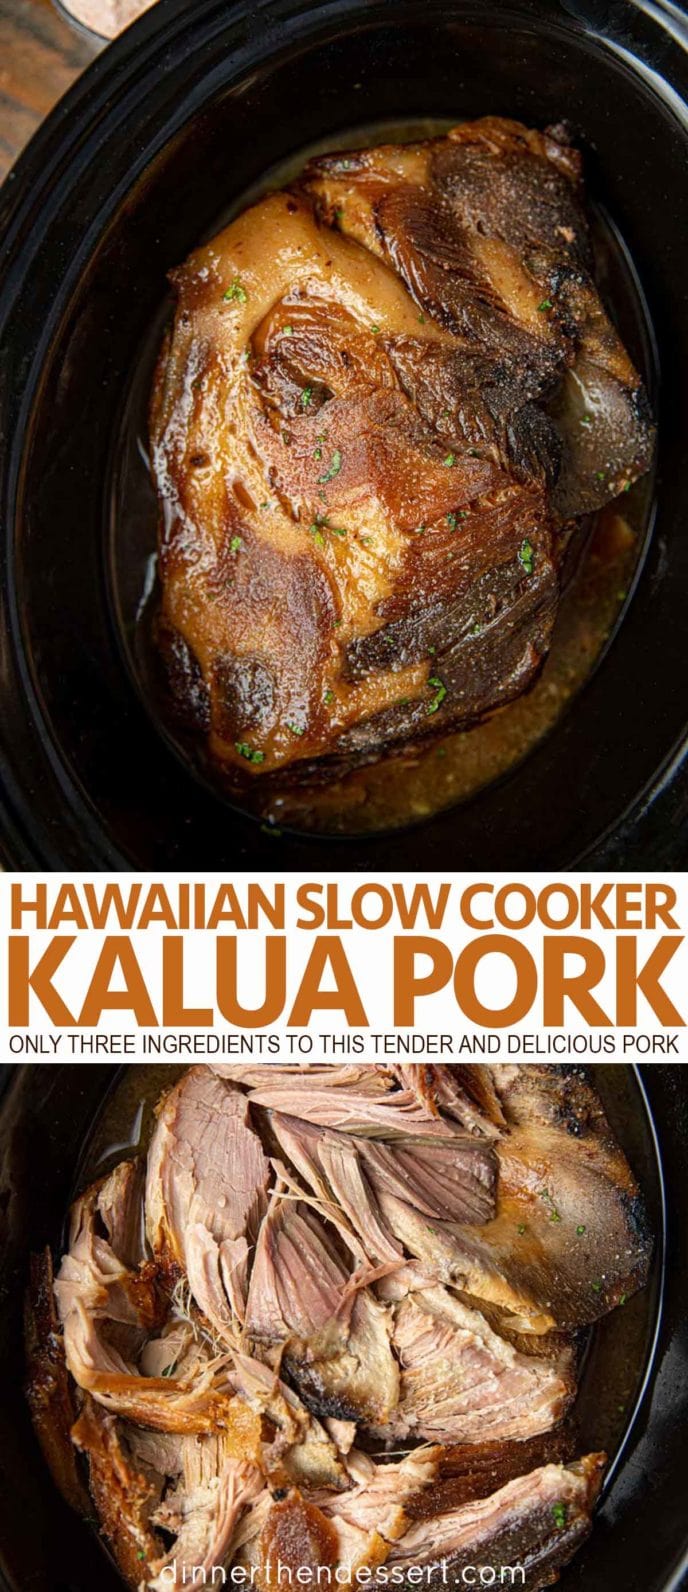 Kalua Pork in a slow cooker